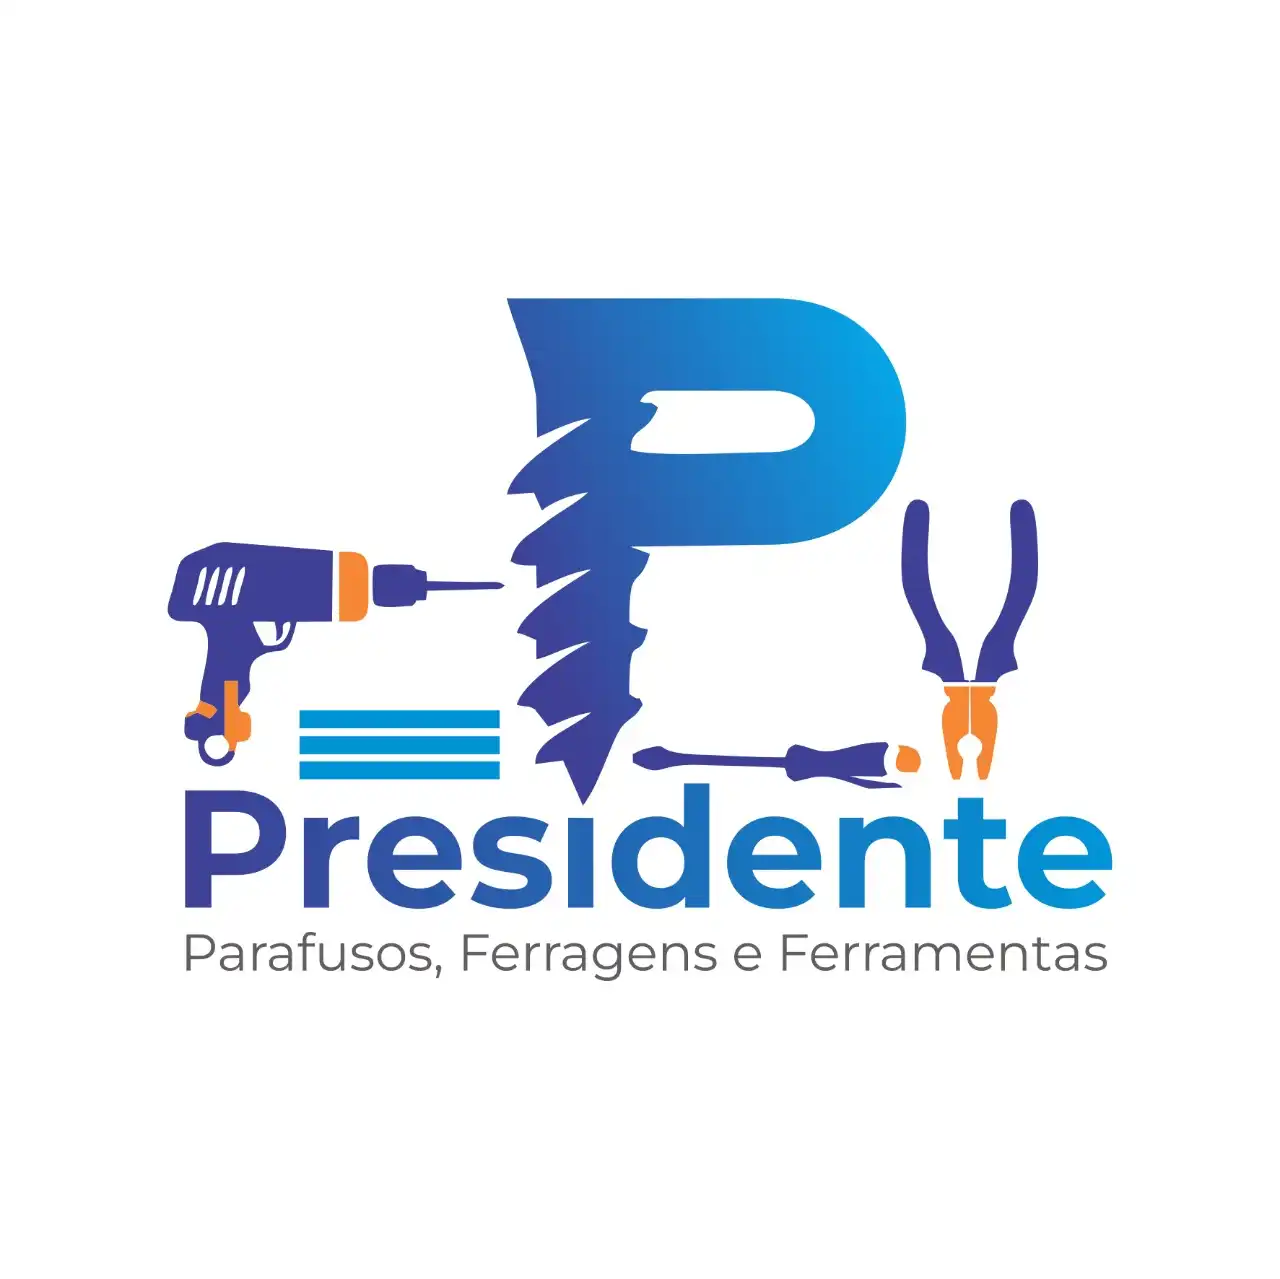 
Logotipo Logomarca Parafusos Ferramentas



